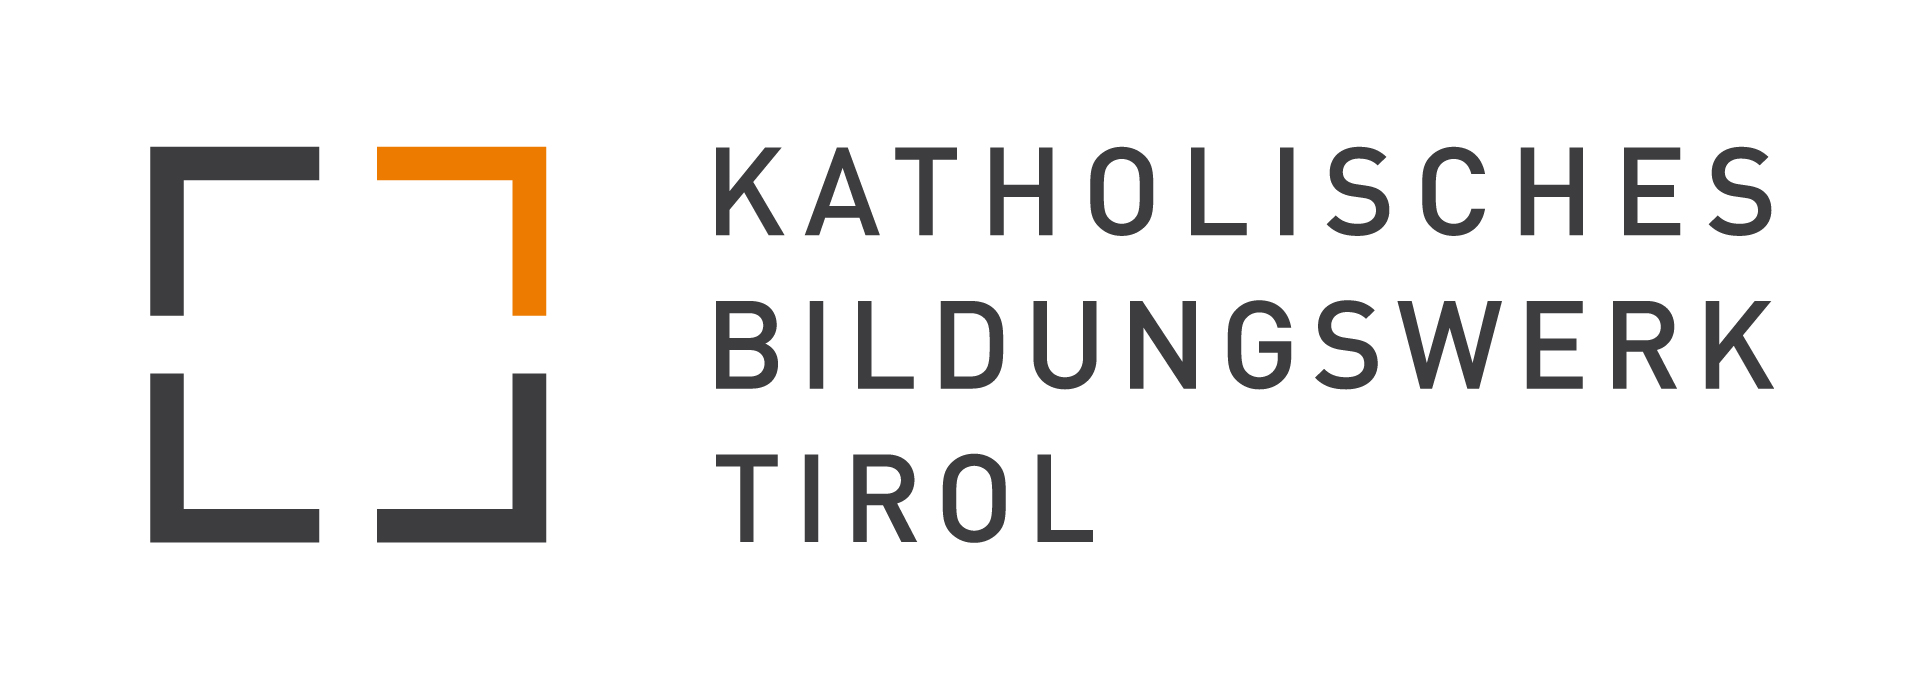 KATHOLISCHES BILDUNGSWERK TIROL -FIT FOR FAMILY ELTERNBILDUNG